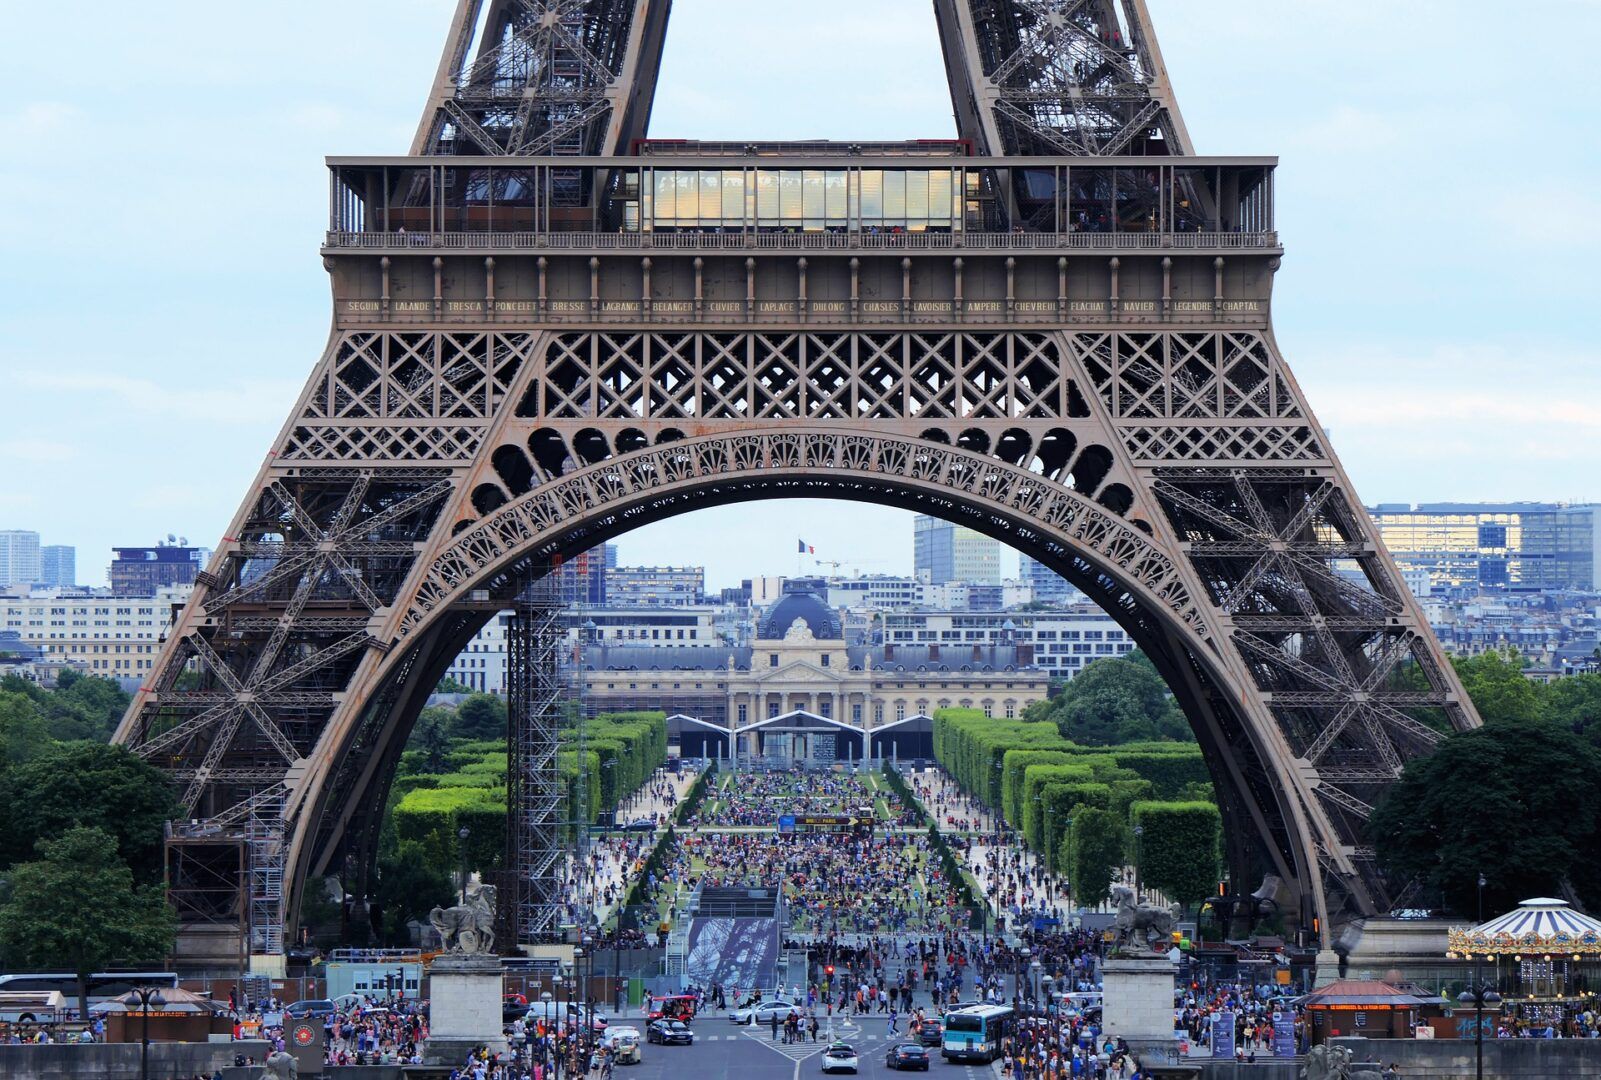 História da Torre Eiffel - origem e curiosidades sobre o monumento